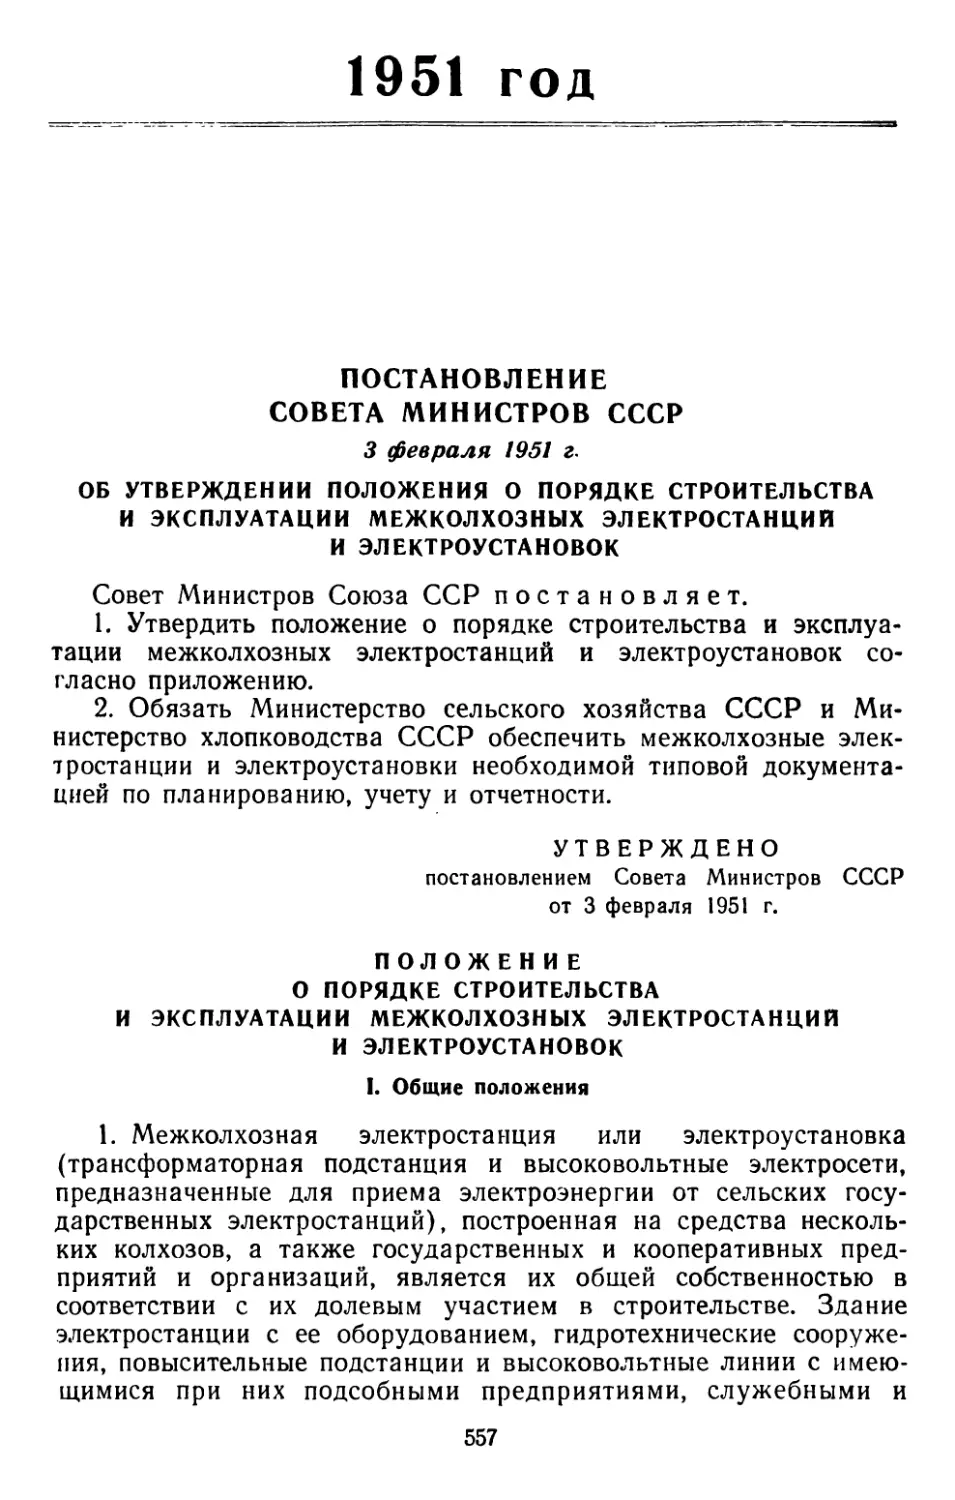 1951  год
Положение о порядке строительства и эксплуатации межколхозных электростанций и электроустановок. Утверждено постановлением Совета Министров СССР от 3 февраля 1951 г